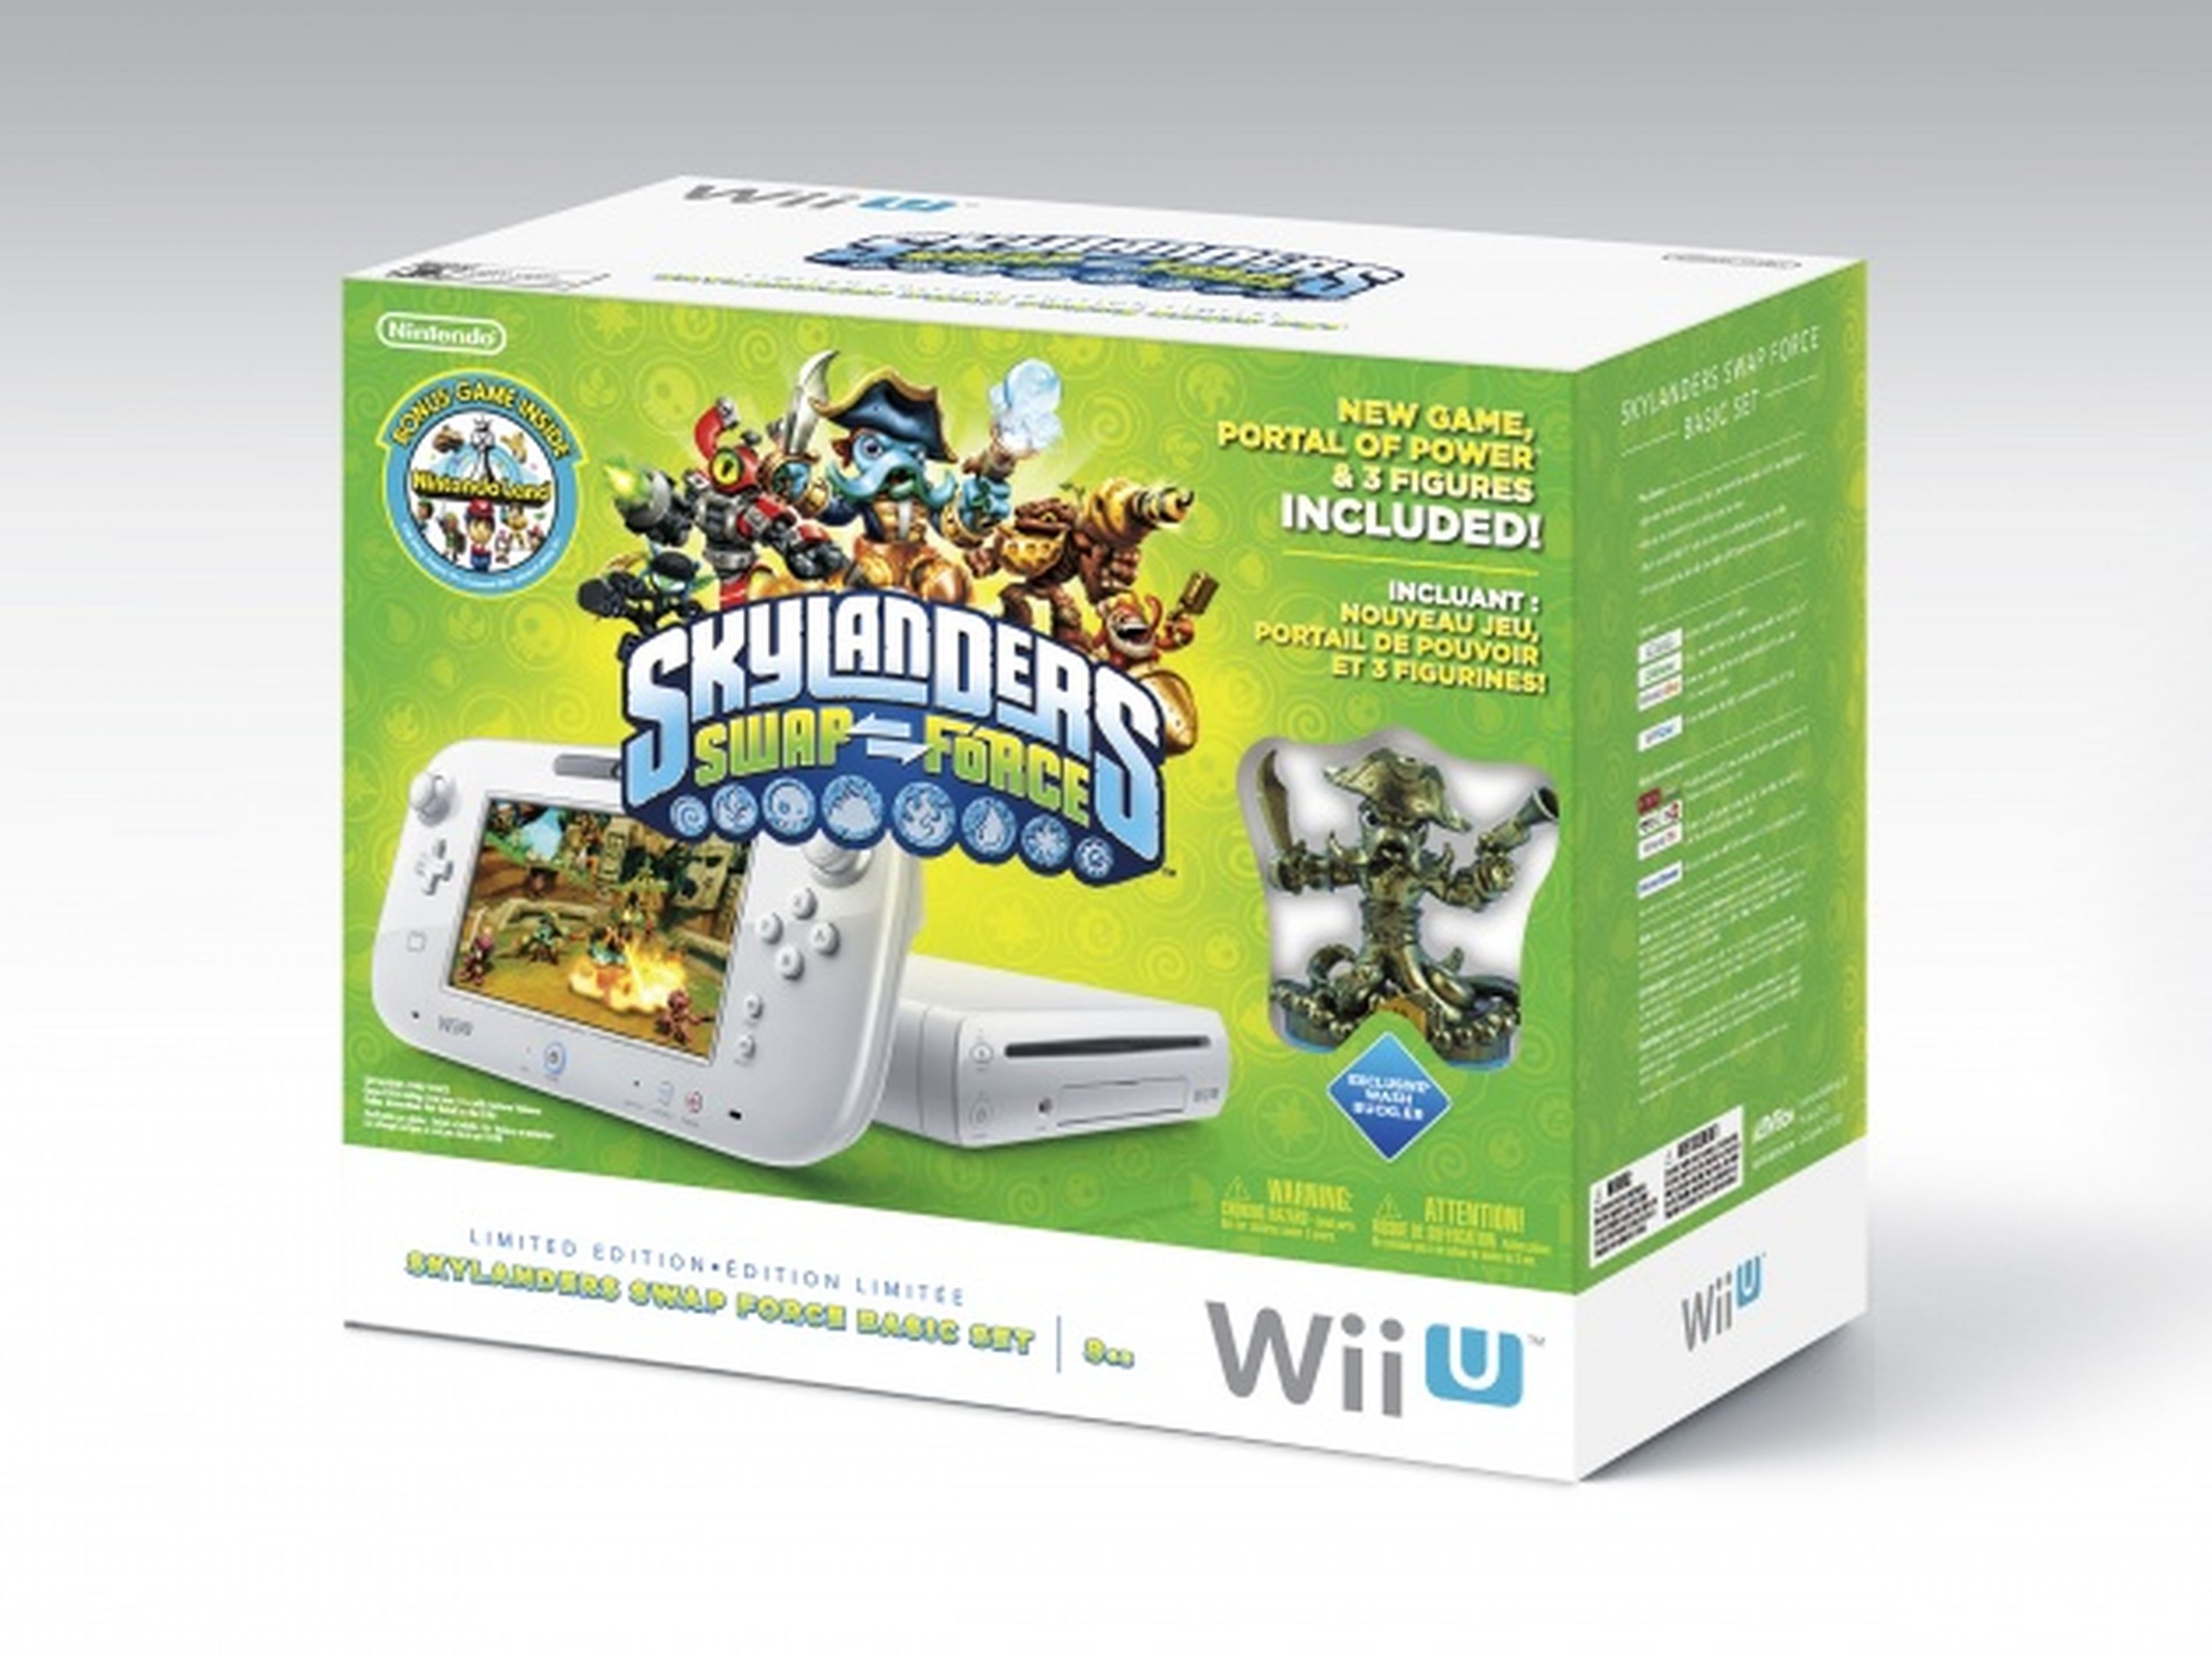 Pack de Wii U con Swap Force y Nintendo Land